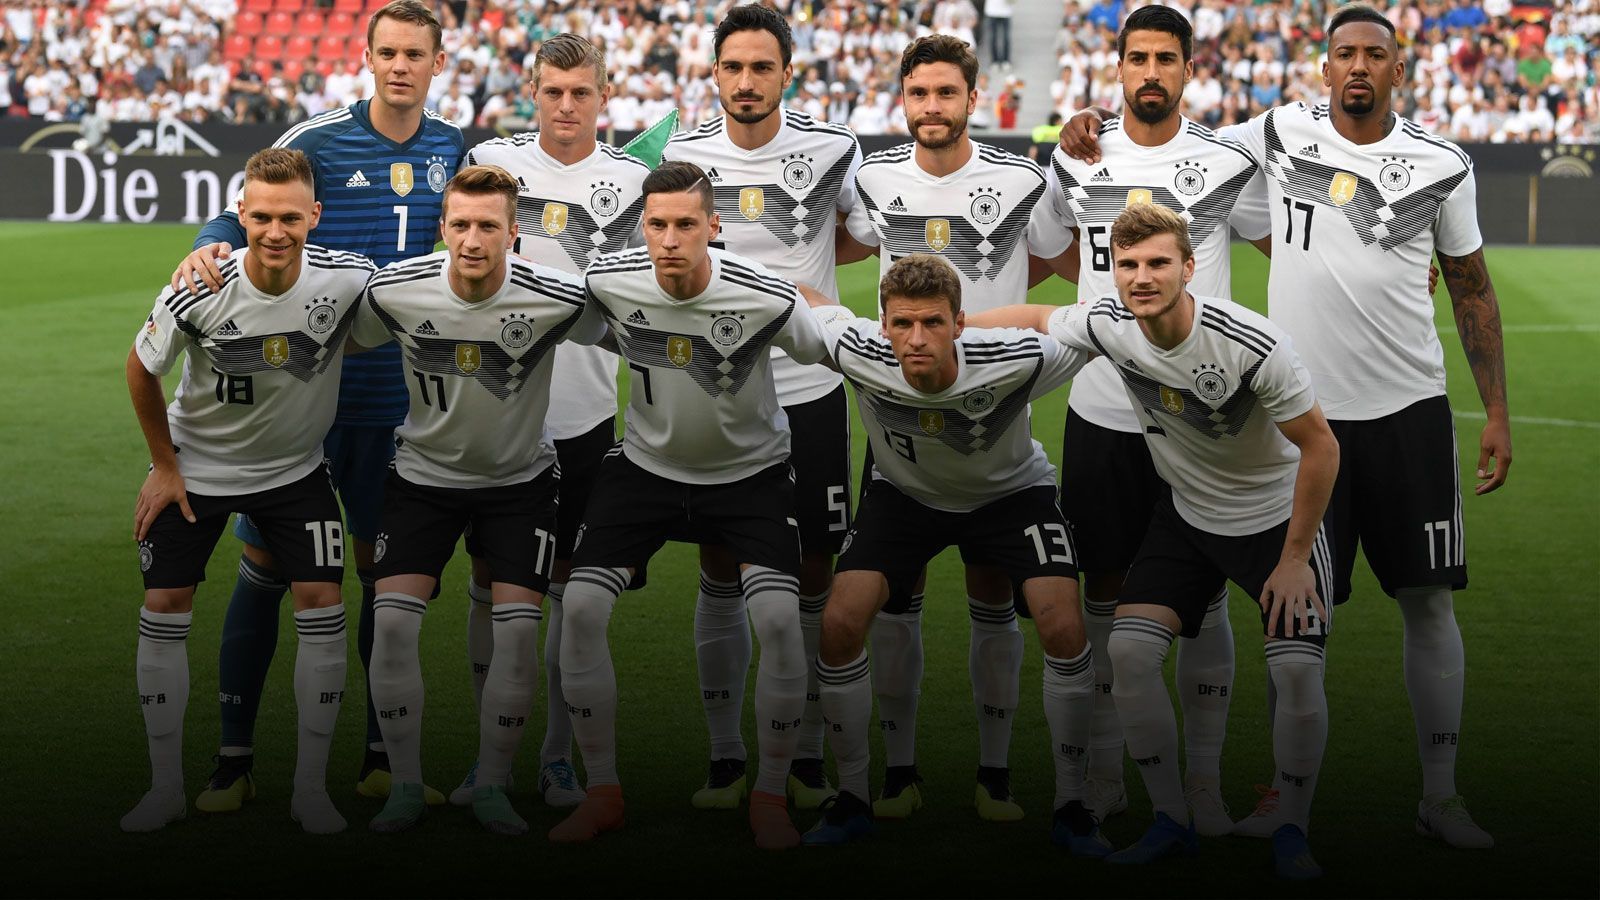 
                <strong>Letzter WM-Test: Die DFB-Elf in der Einzelkritik gegen Saudi-Arabien</strong><br>
                Die deutsche Nationalmannschaft hat sich beim letzten Testspiel vor der WM nicht mit Ruhm bekleckert, knapp eine Woche vor dem Start gegen Mexiko ist das DFB-Team noch nicht in Form. Gegen Saudi-Arabien reichte es nach einer sehr schwachen Leistung am Ende zu einem 2:1-Sieg.
              